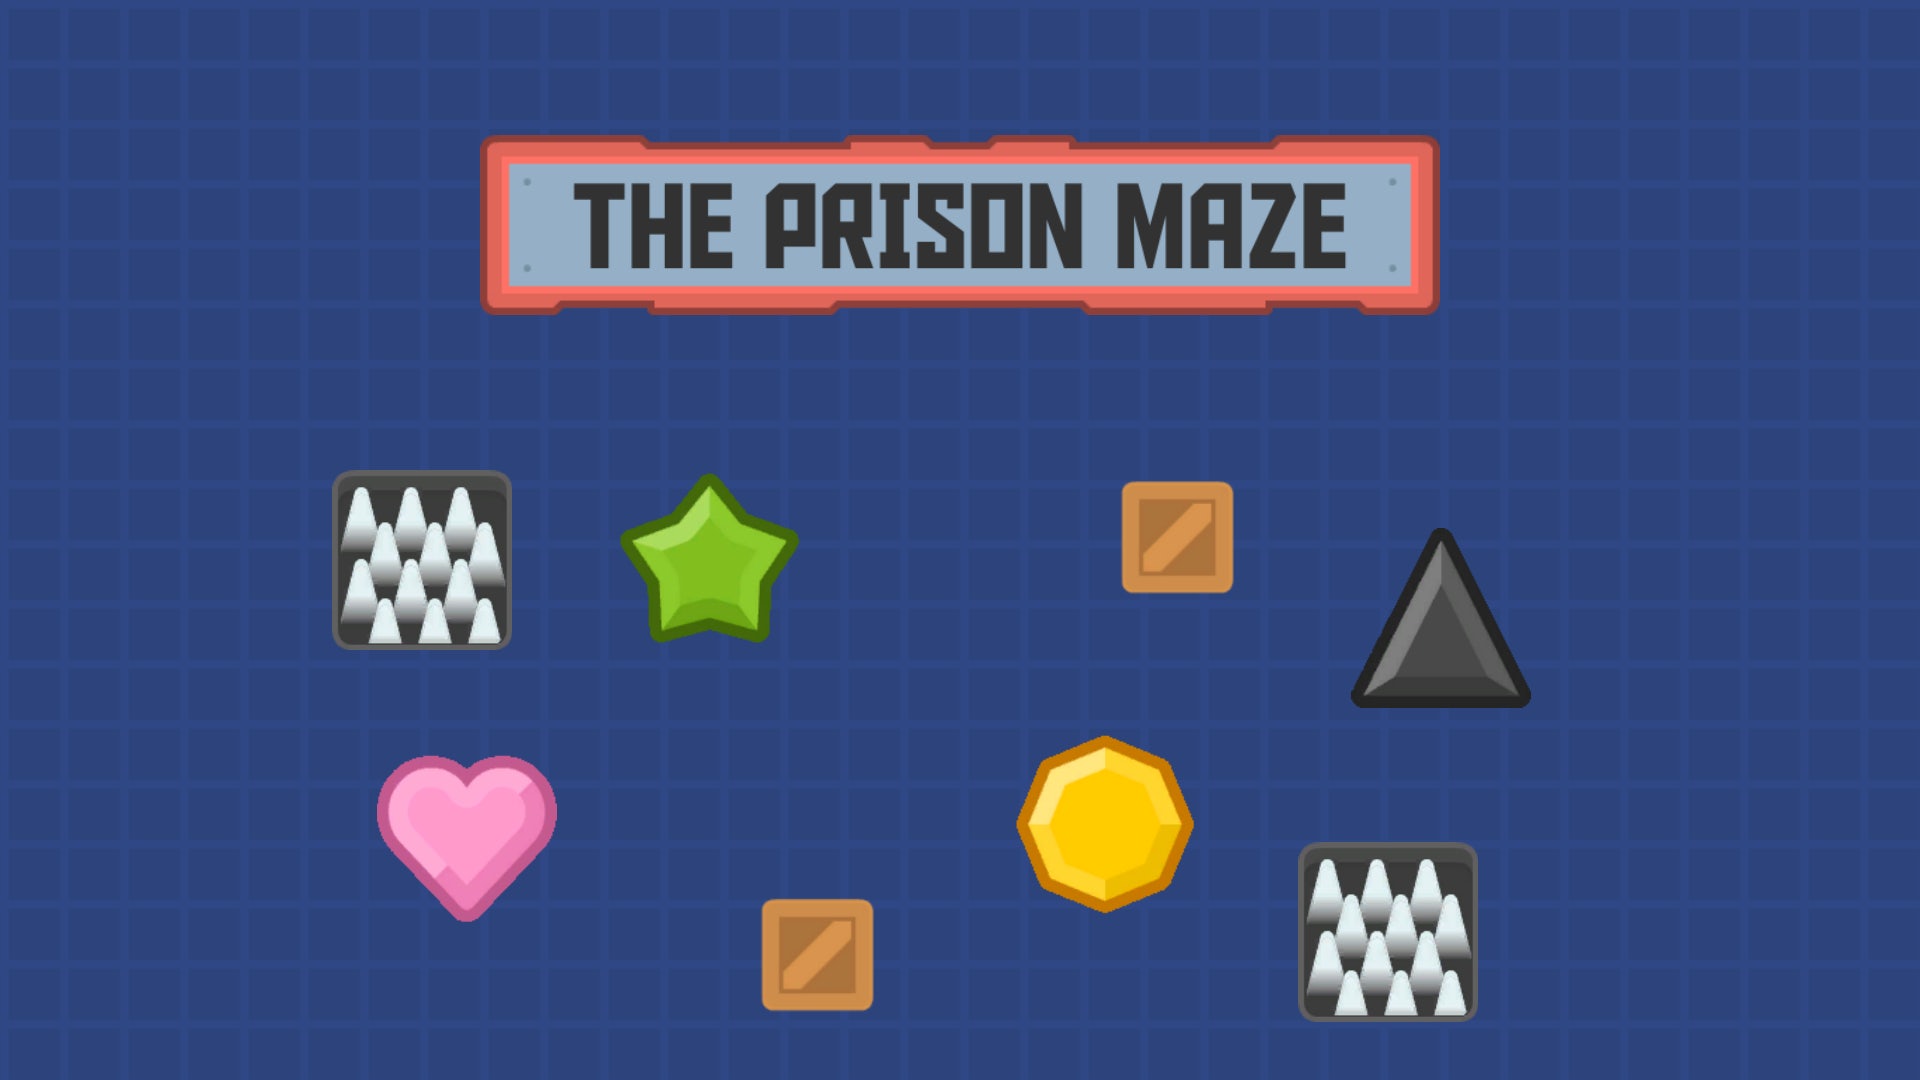 The Prison Maze